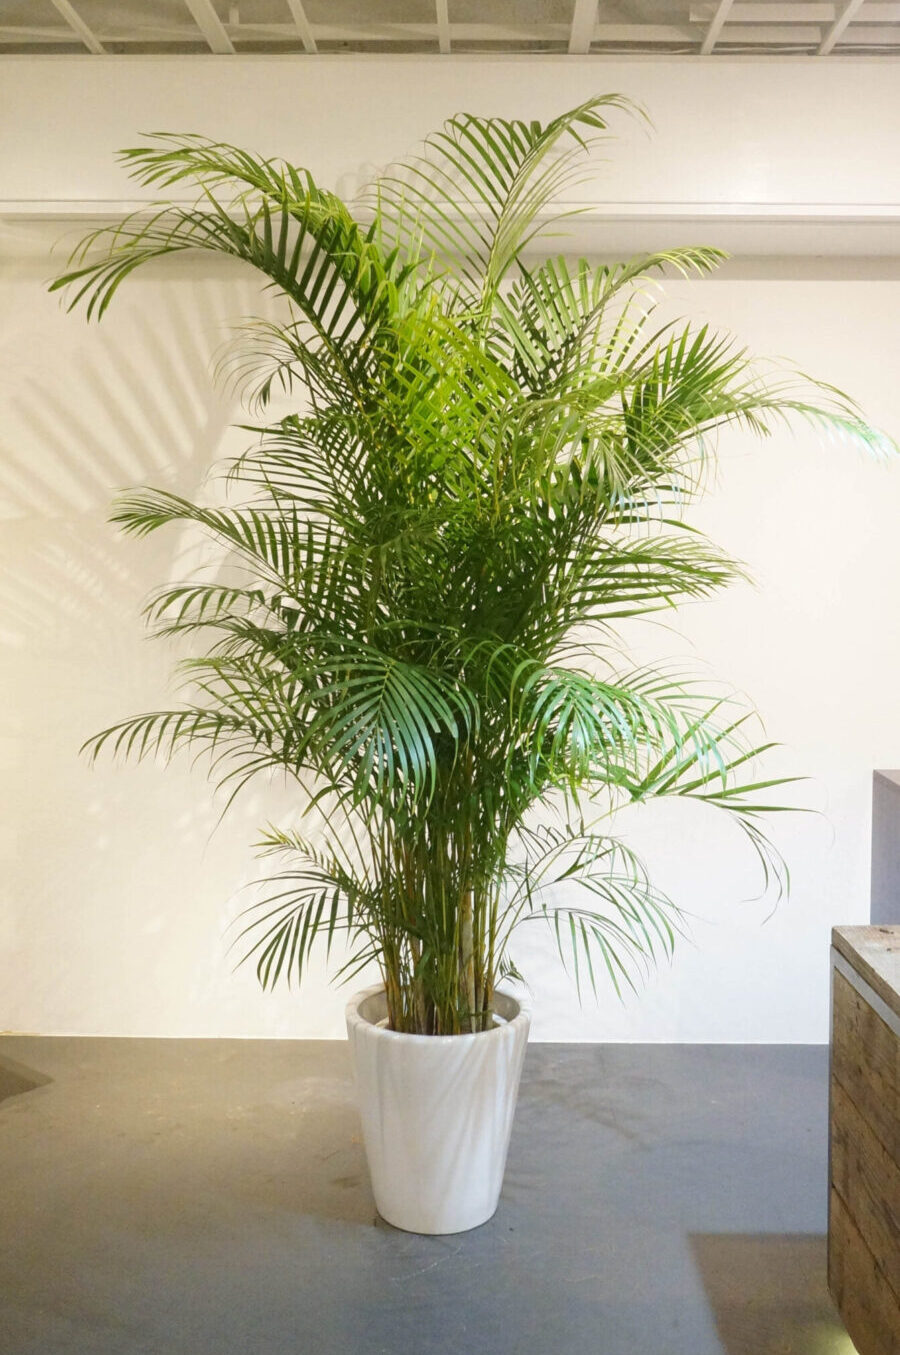 夏に心地よい空間を作る観葉植物 東京の観葉植物レンタルはkirin Plus キリンプラス